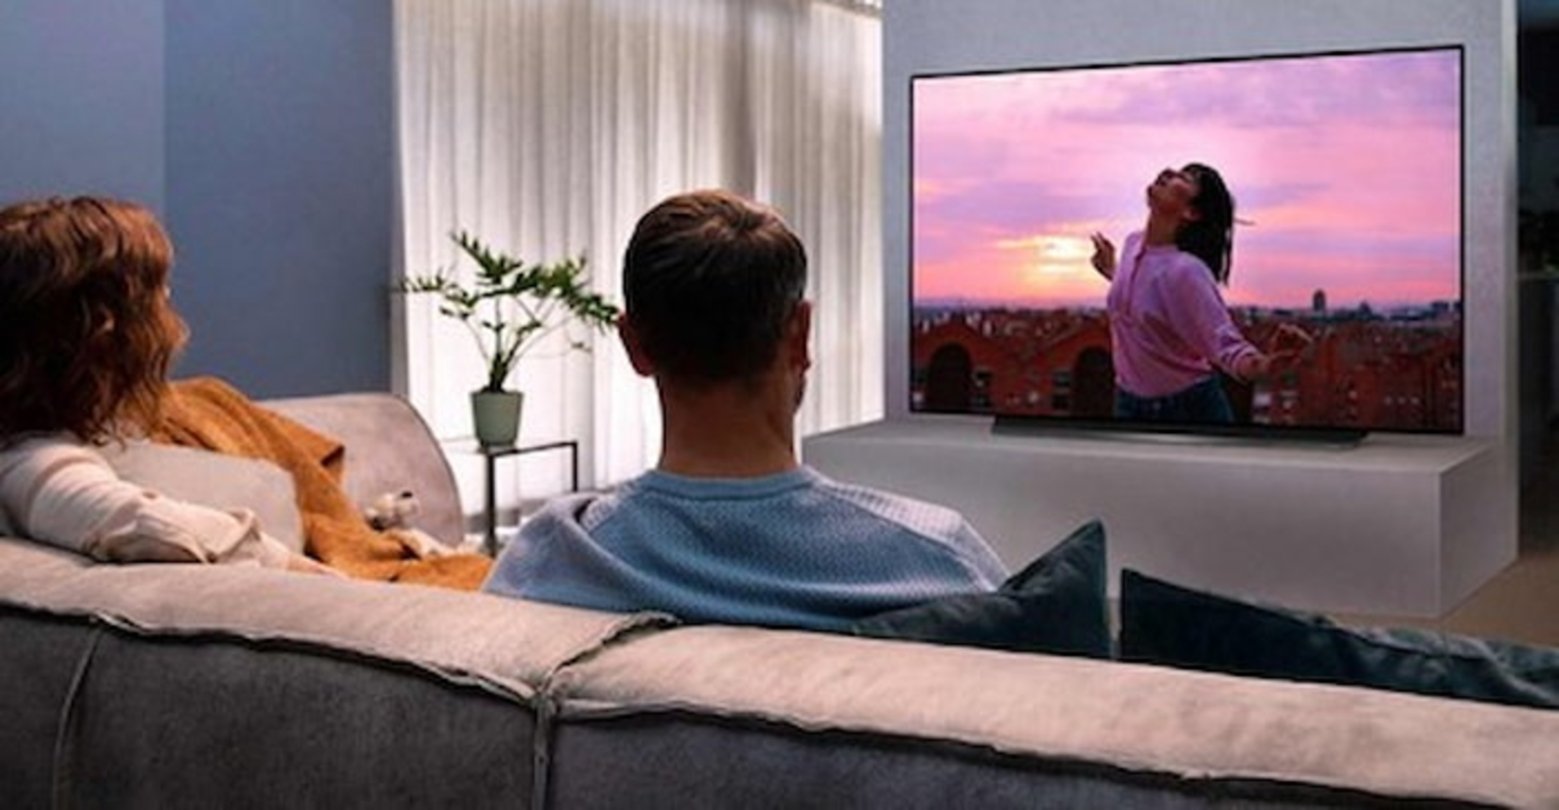 Mira la TV desde diferentes ángulos sin moverte